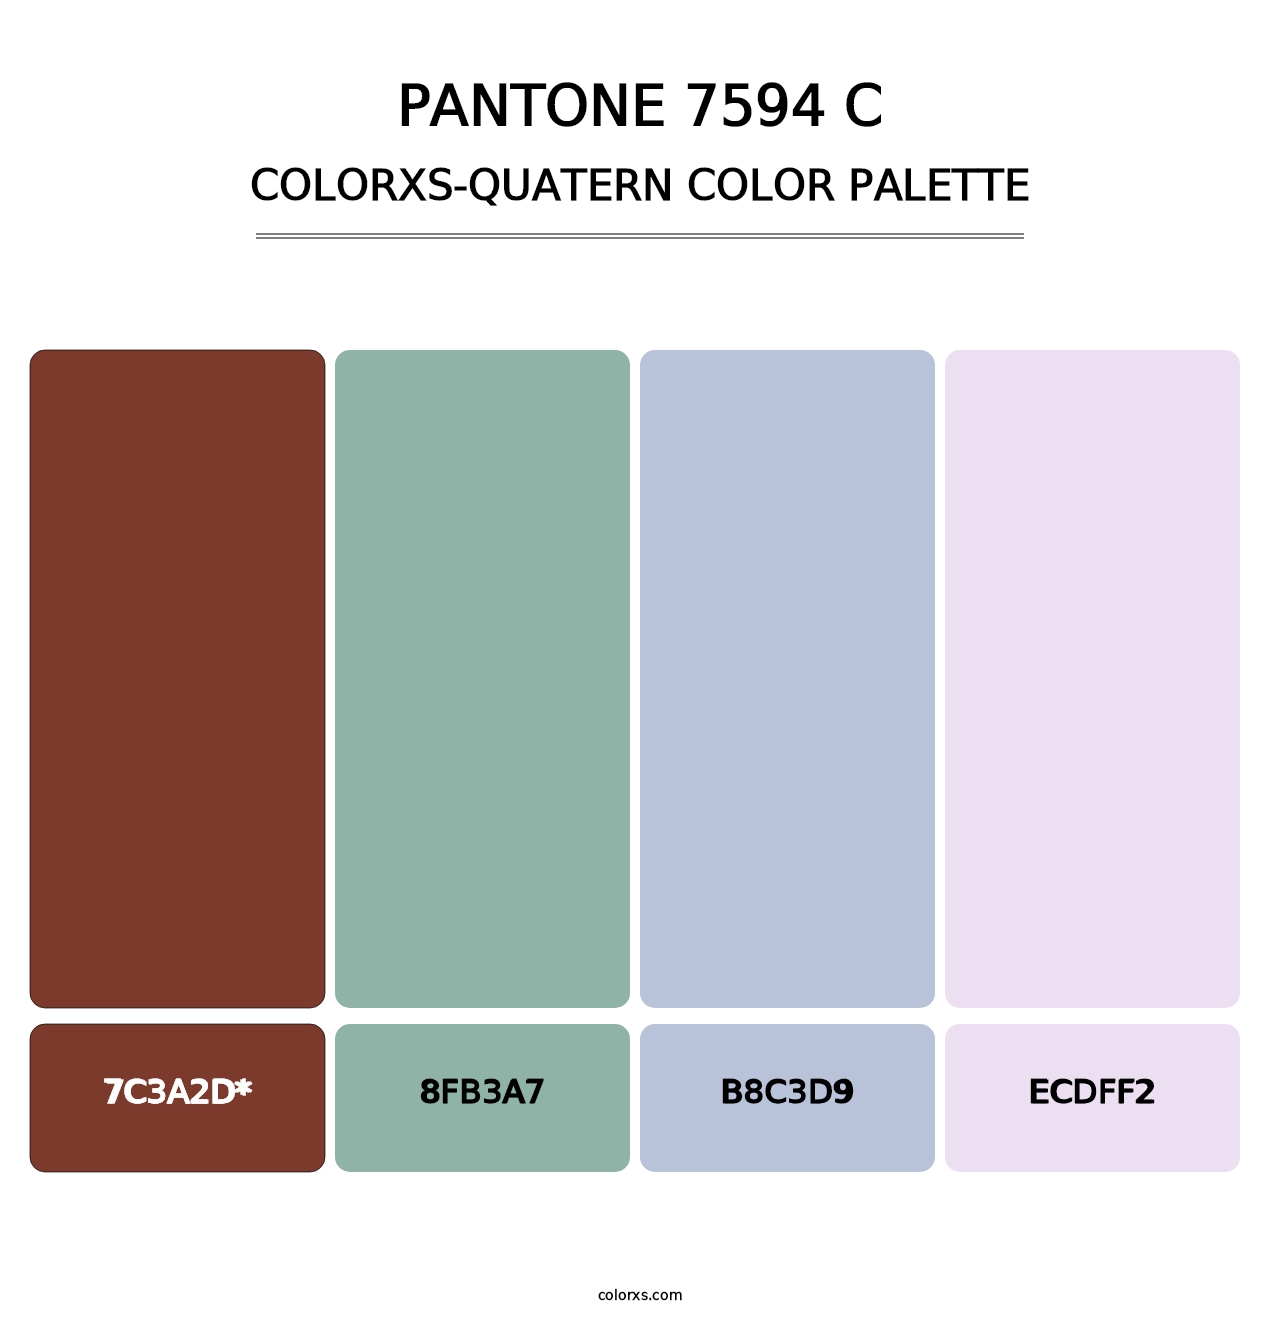 PANTONE 7594 C - Colorxs Quatern Palette